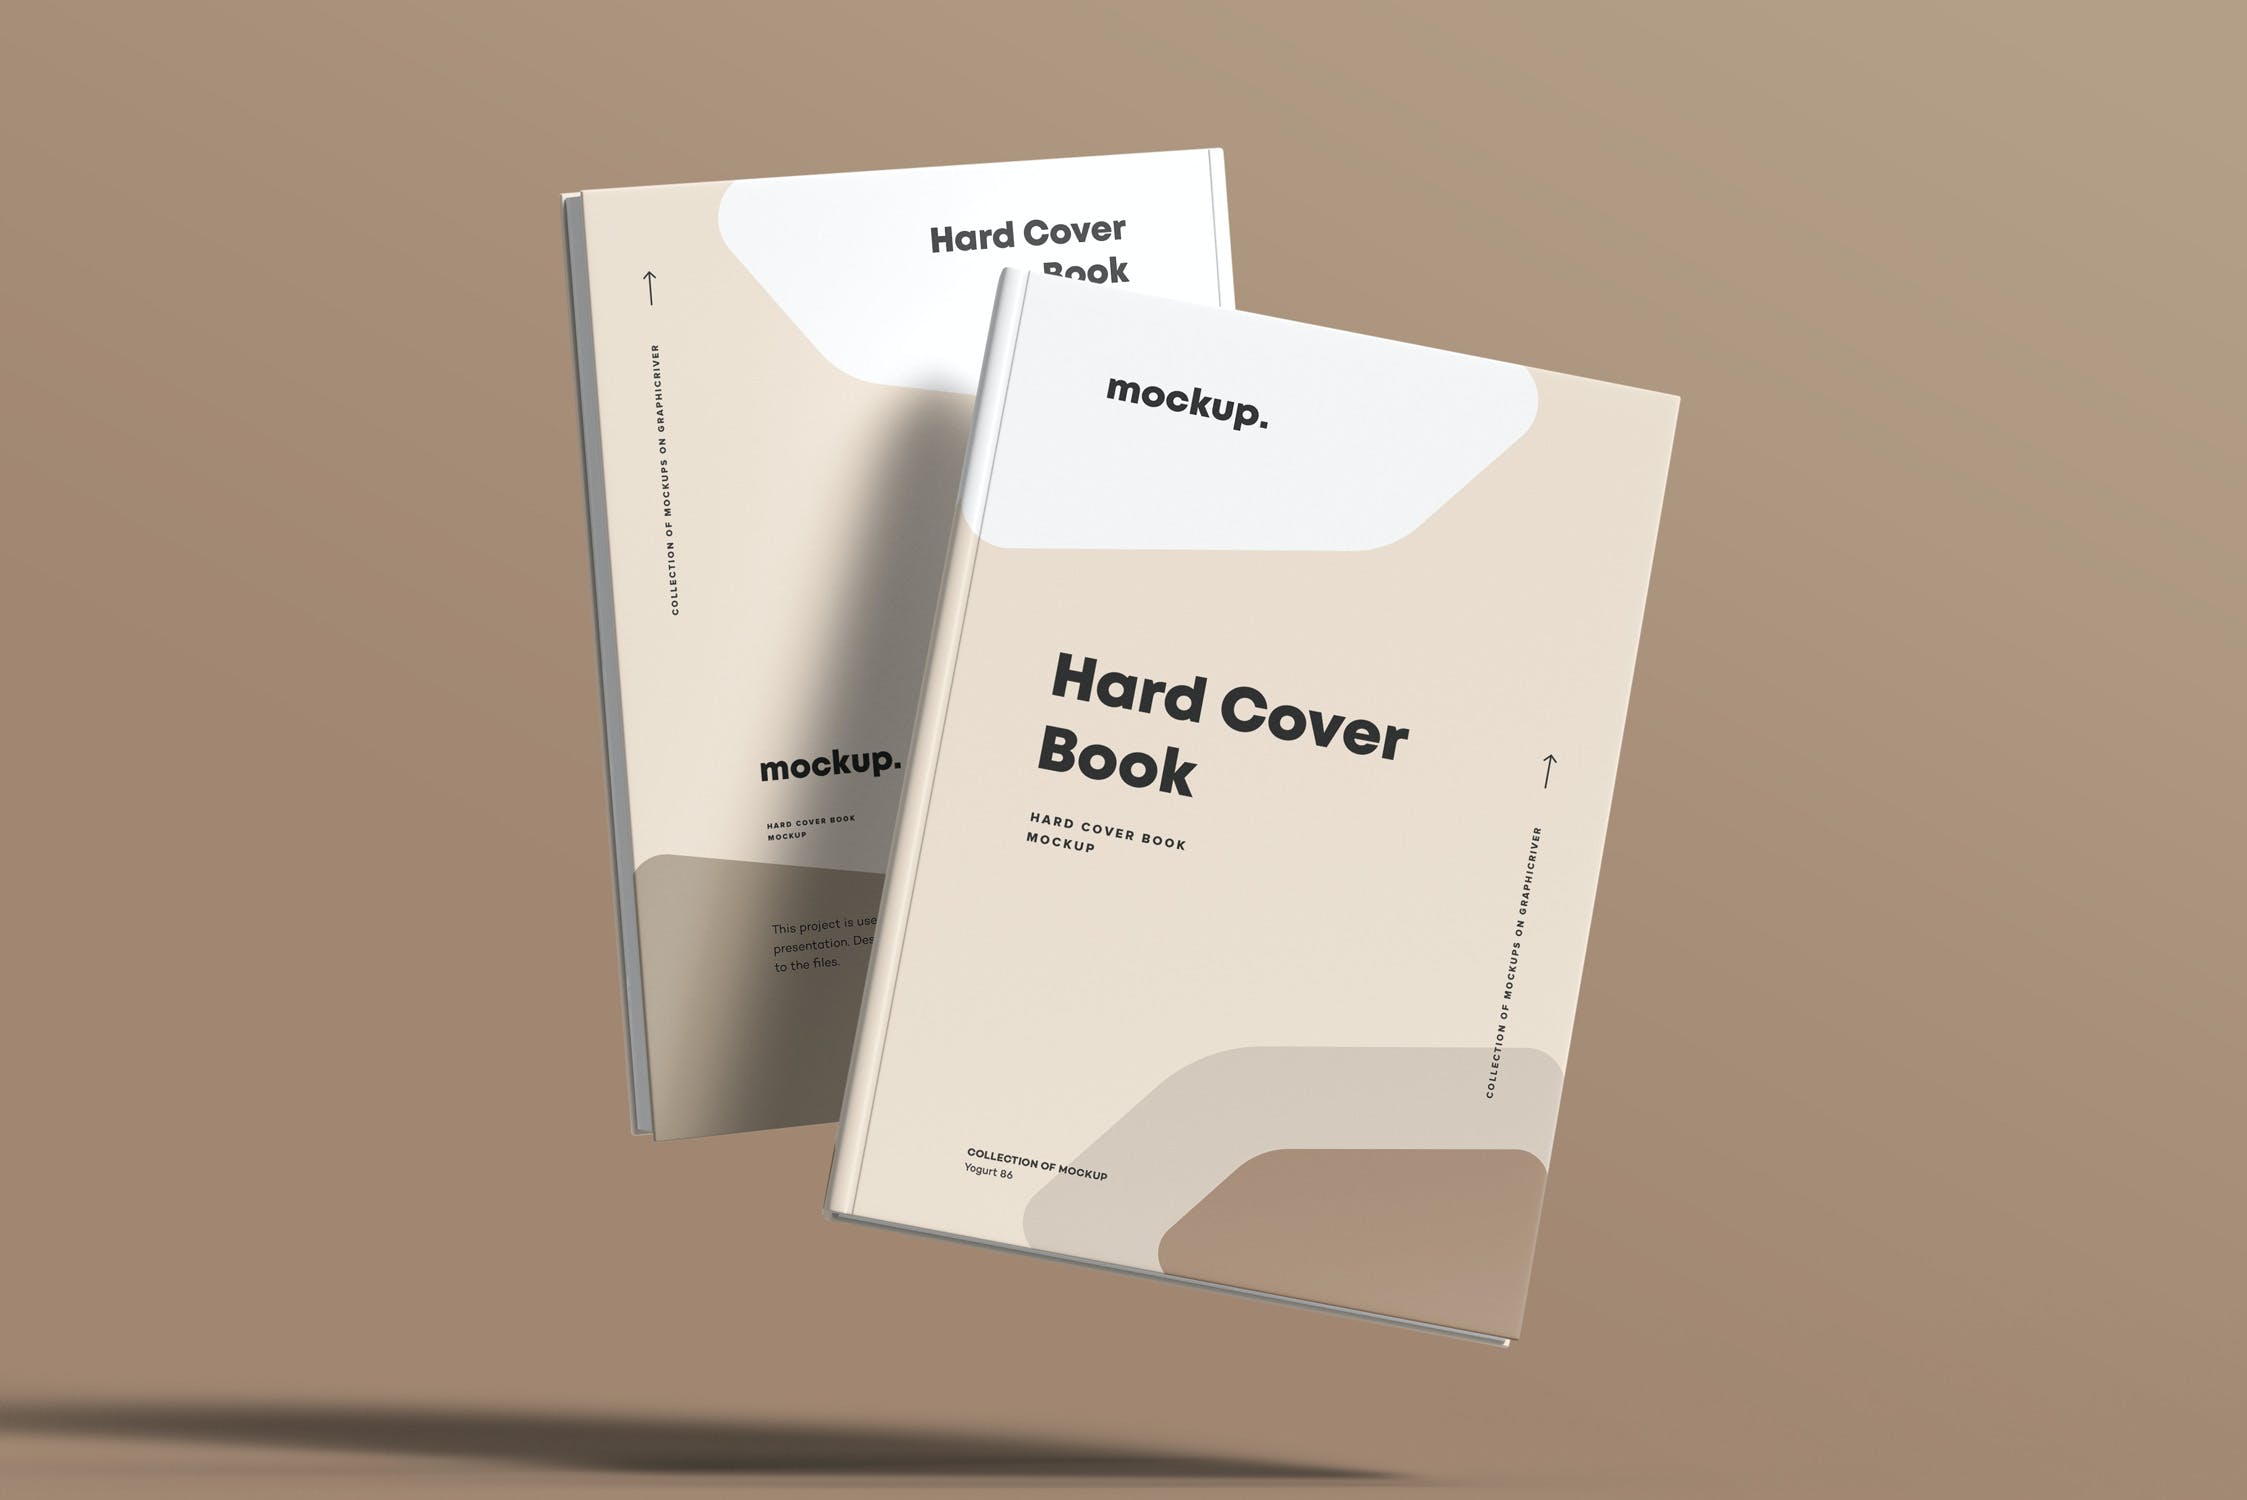 8款精装书封面设计展示贴图样机模板素材 Hard Cover Book Mock-up